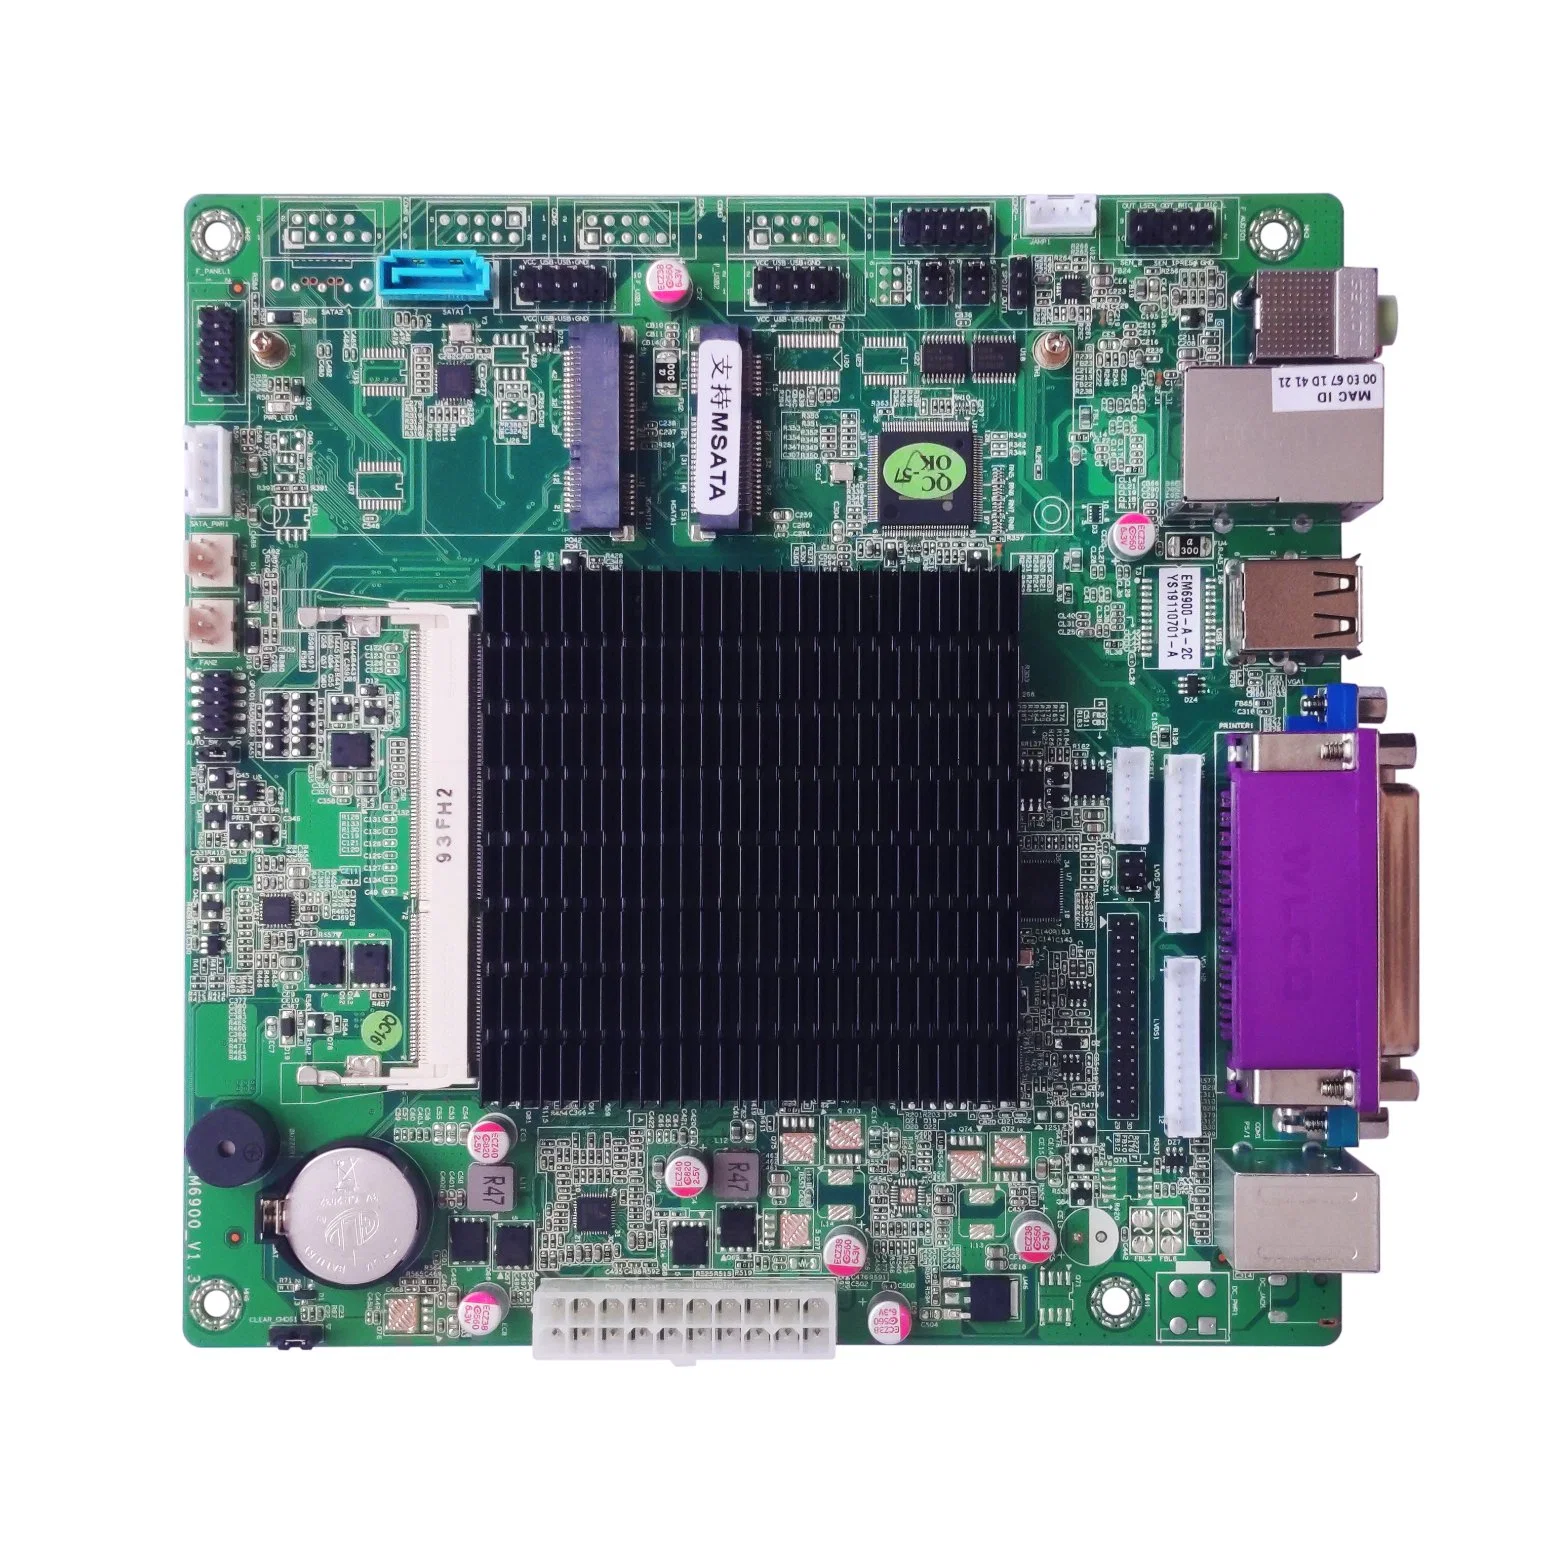 Elsky Em6900 Mini-ITX Motherboard SoC Chip-Set J1900 Prozessoren DDR3 Max. 8GB RAM SATA3,0 MSAT Realtek 8111E 1000m LAN ATX Leistung